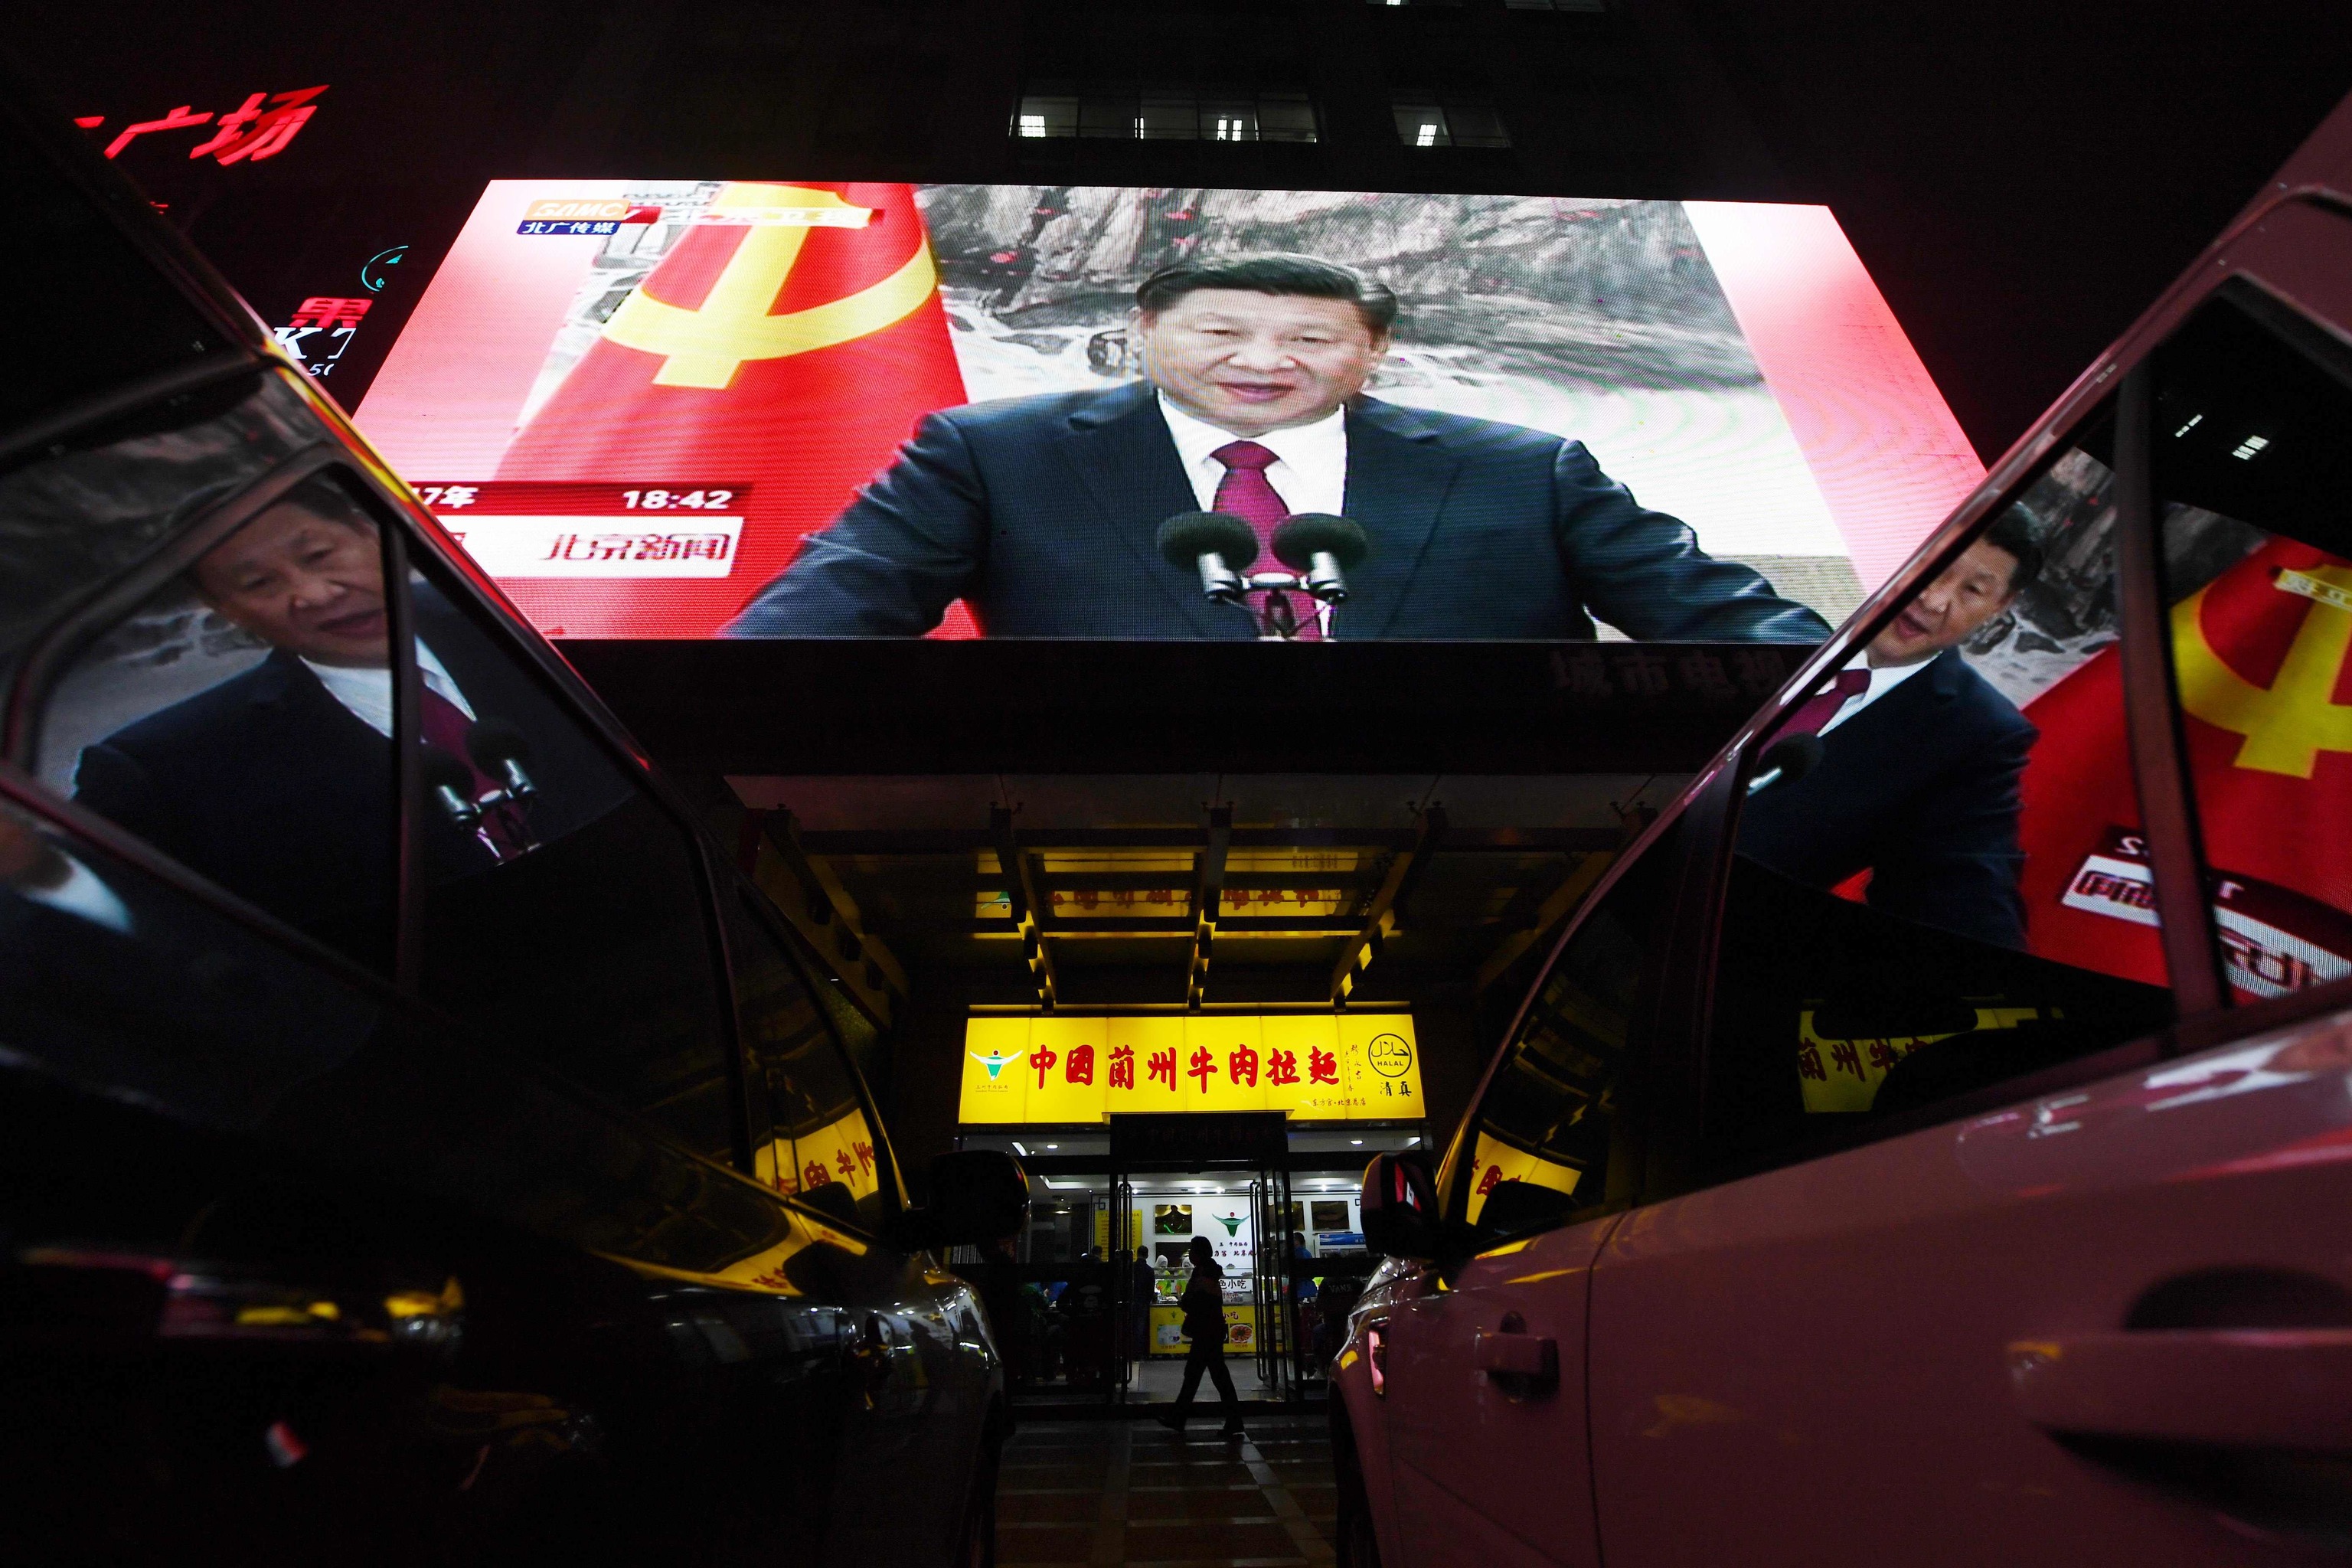 Gente pasa por delante de una tienda en la que hay instalada una gran pantalla en la que se muestra una intervención del presidente chino, Xi Jinping.